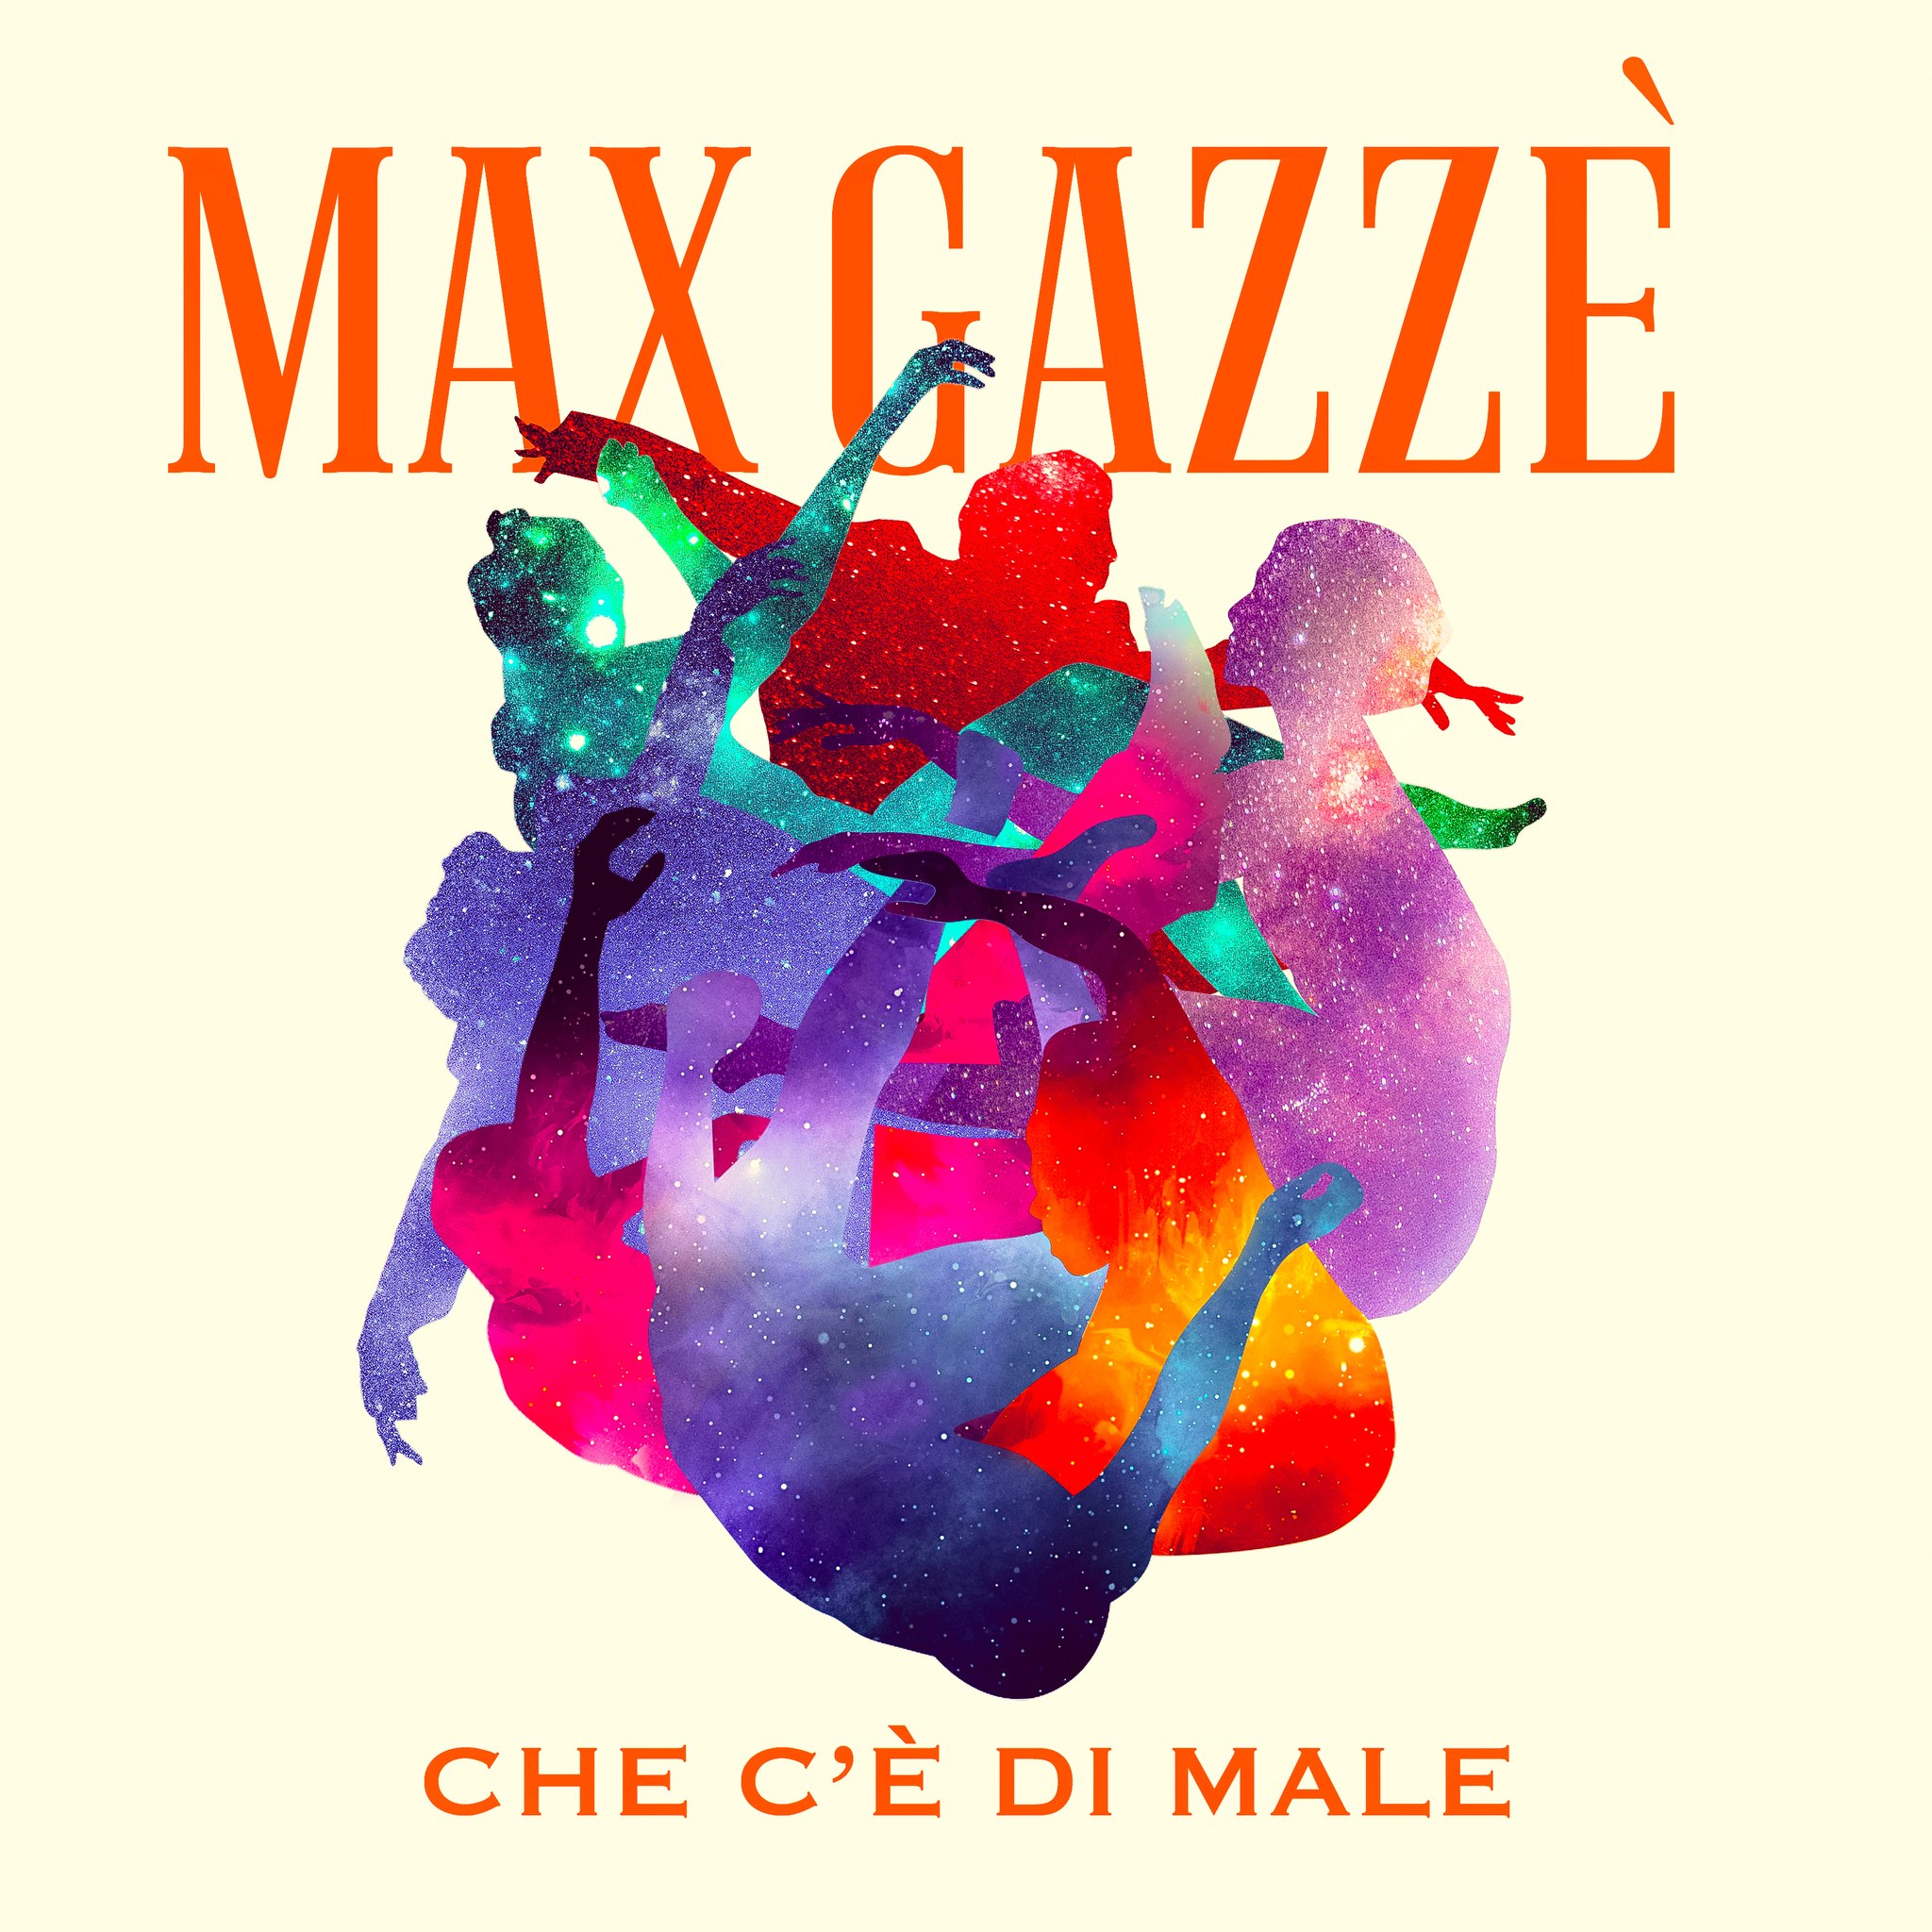 Max Gazzè - Che c'è di male - Testo e Significato